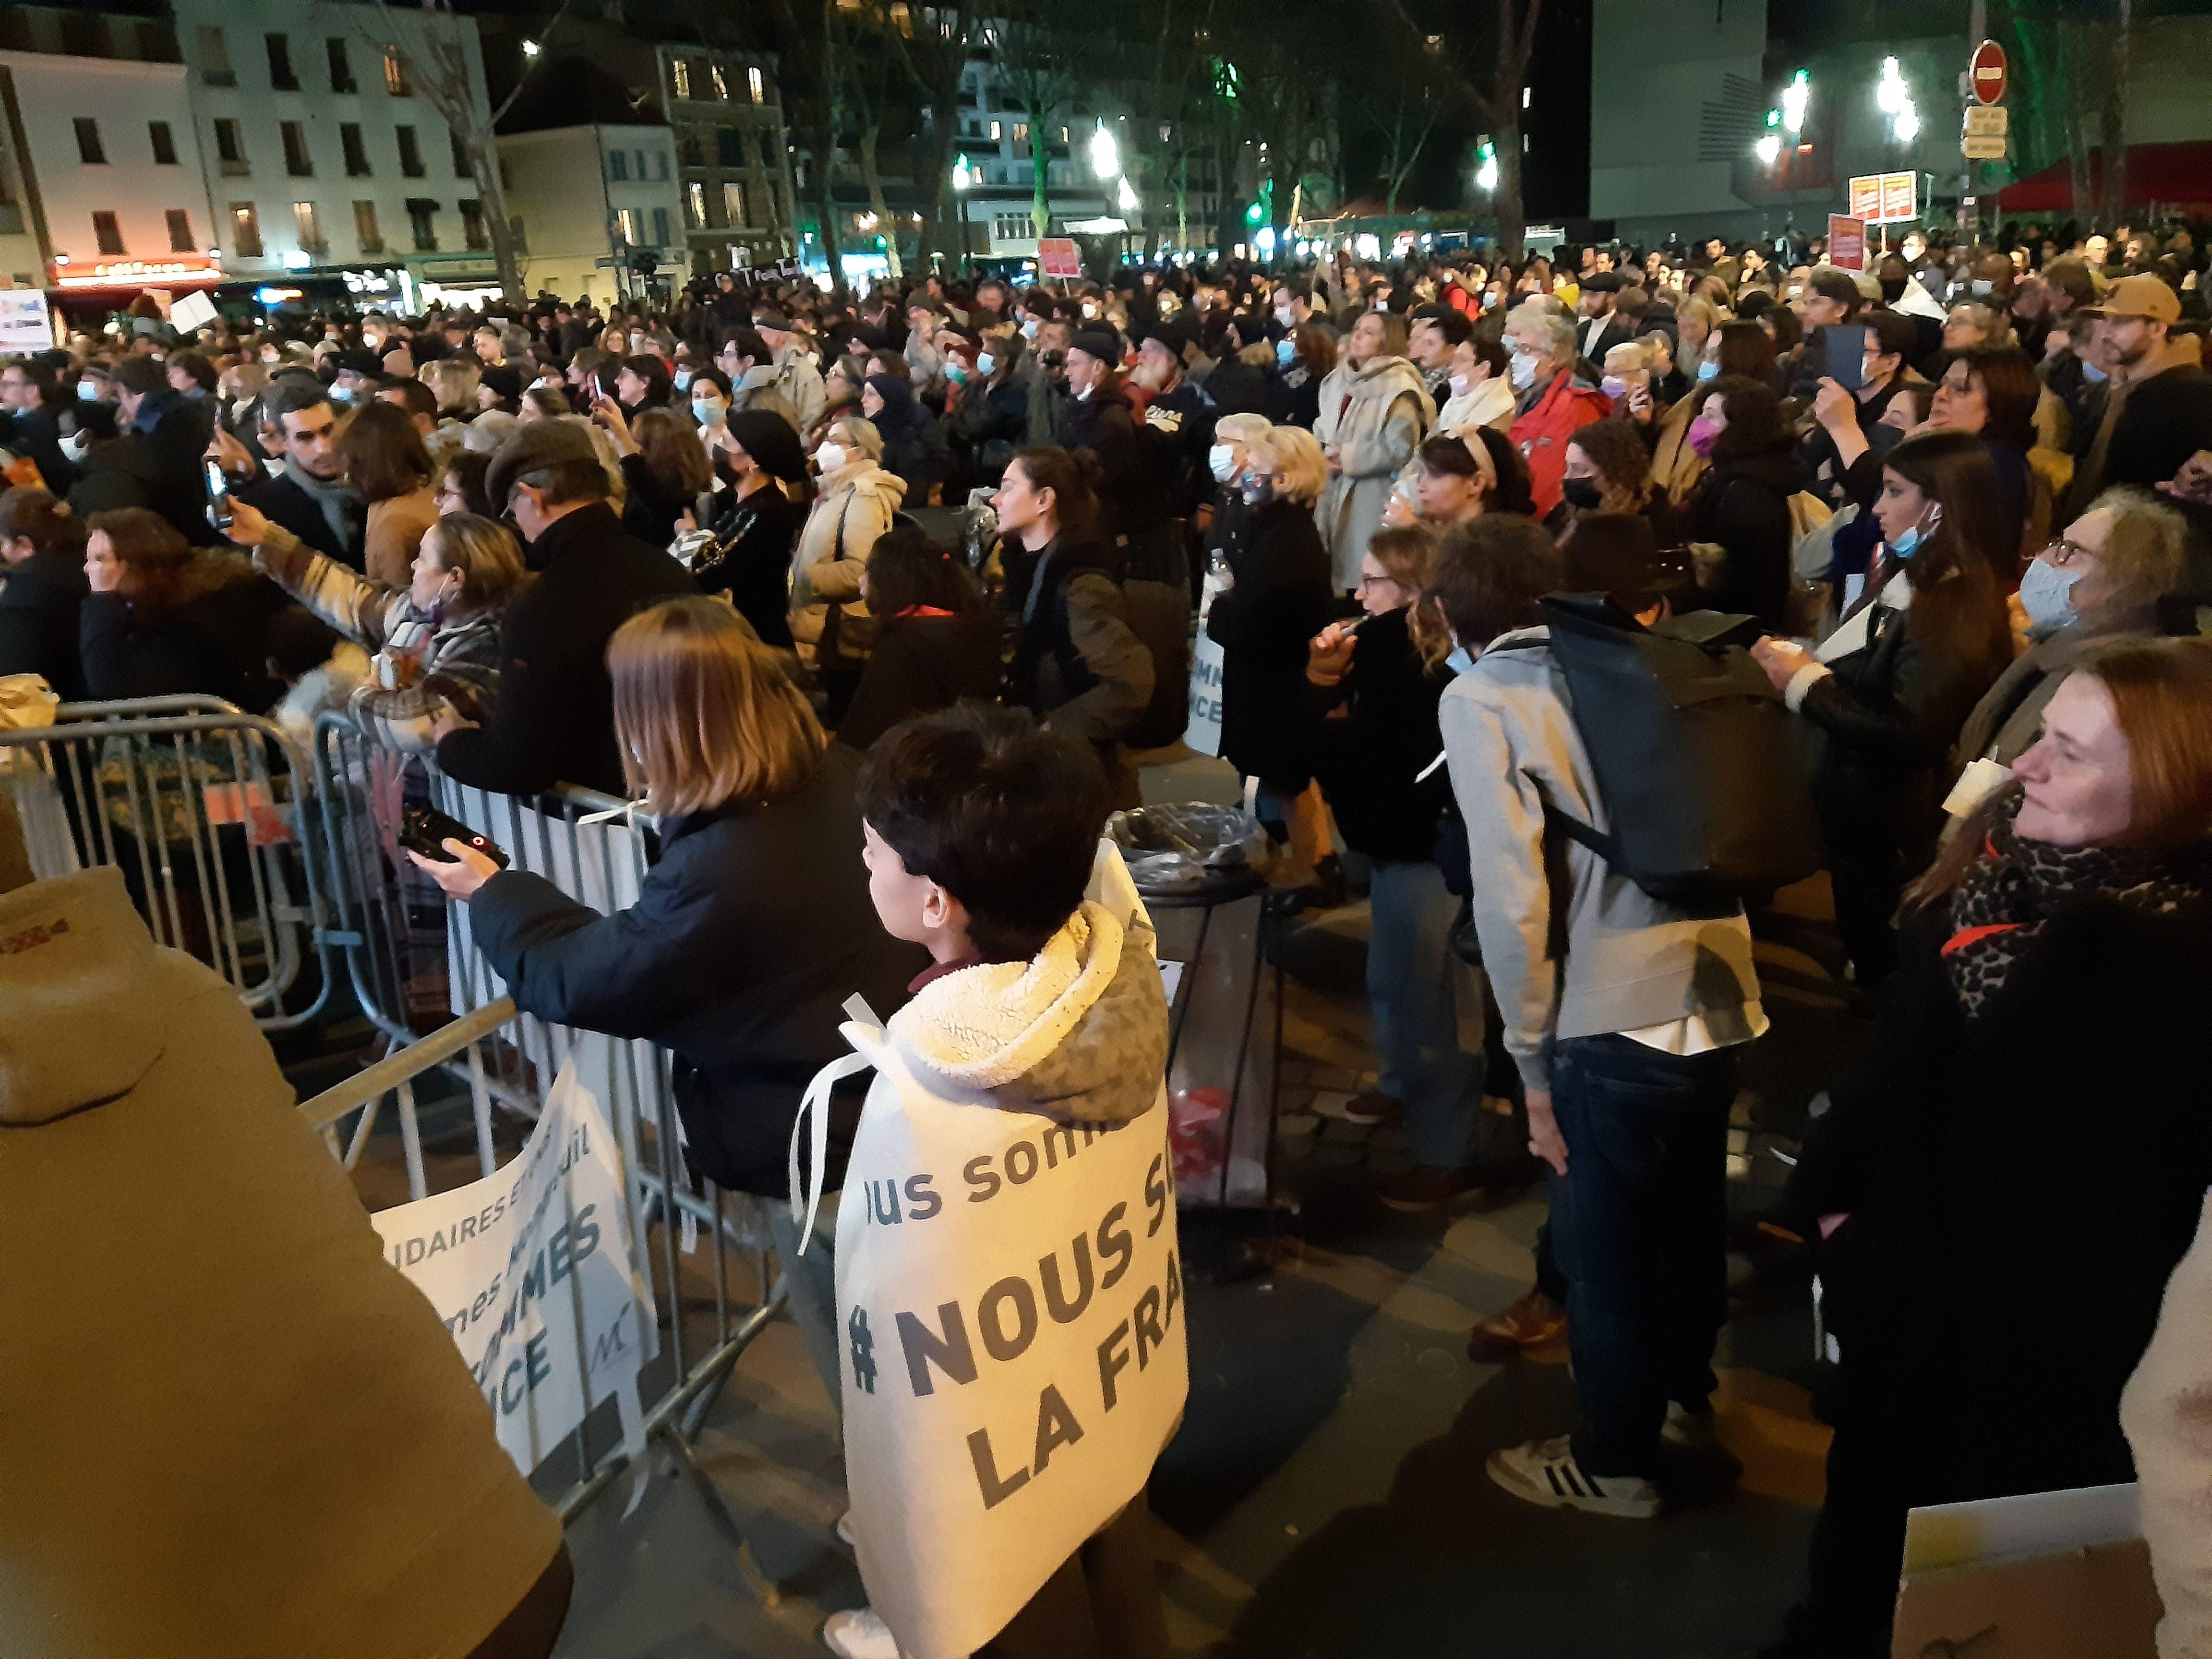 A l'appel du maire de Montreuil, plus de 200 personnes se sont réunies sur la place de l'hôtel de ville en réaction à la venue en Seine-Saint-Denis d'Eric Zemmour dans le cadre d'une émission de BFMTV. LP/E.M.